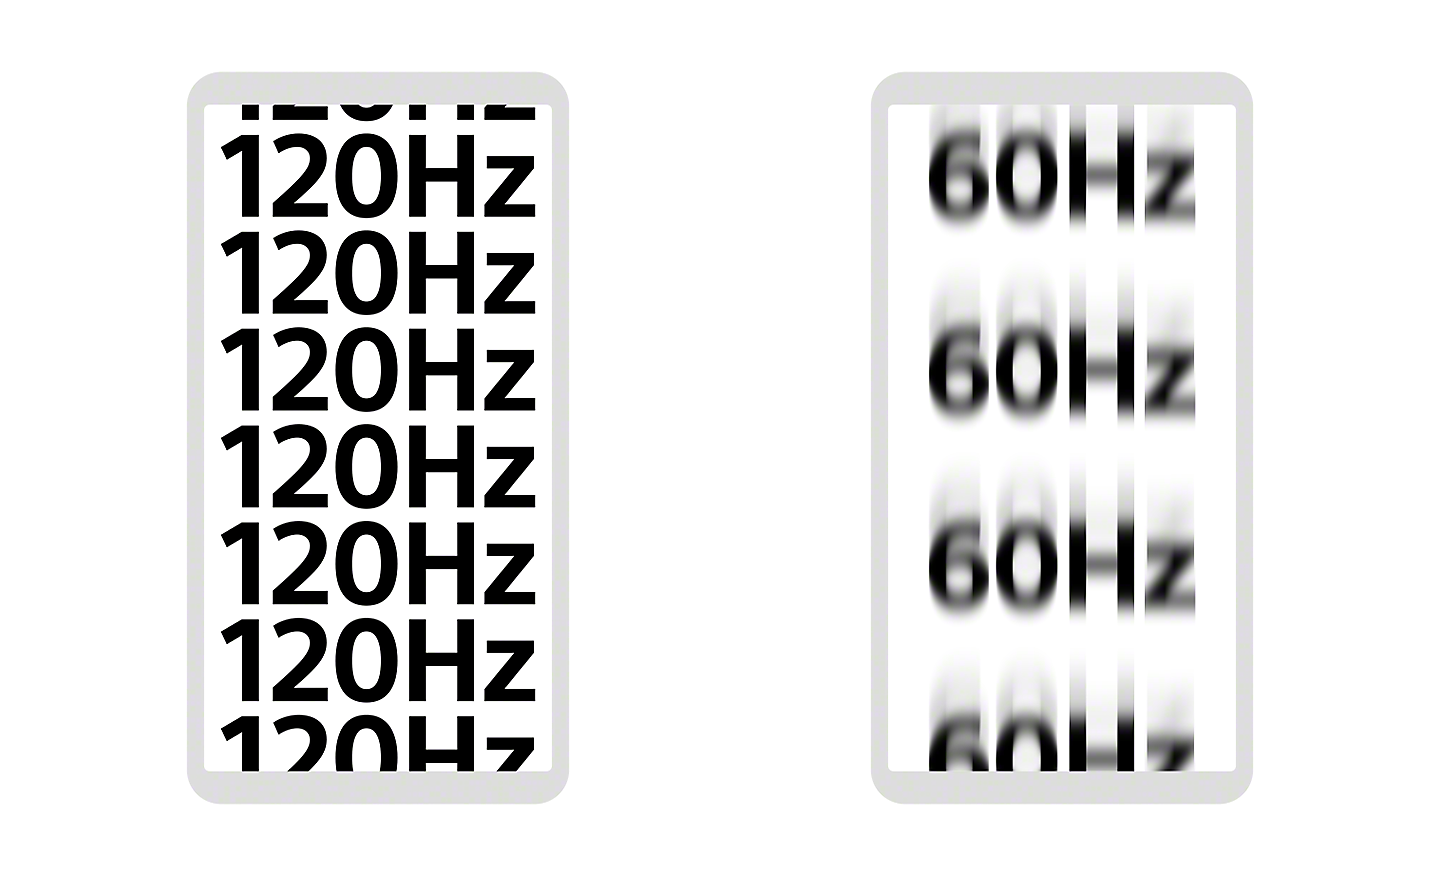 Ilustrácia displejov dvoch smartfónov, kde jeden ukazuje presné zaostrenie 120 HZ a druhý 60 Hz mierne mimo zaostrenia